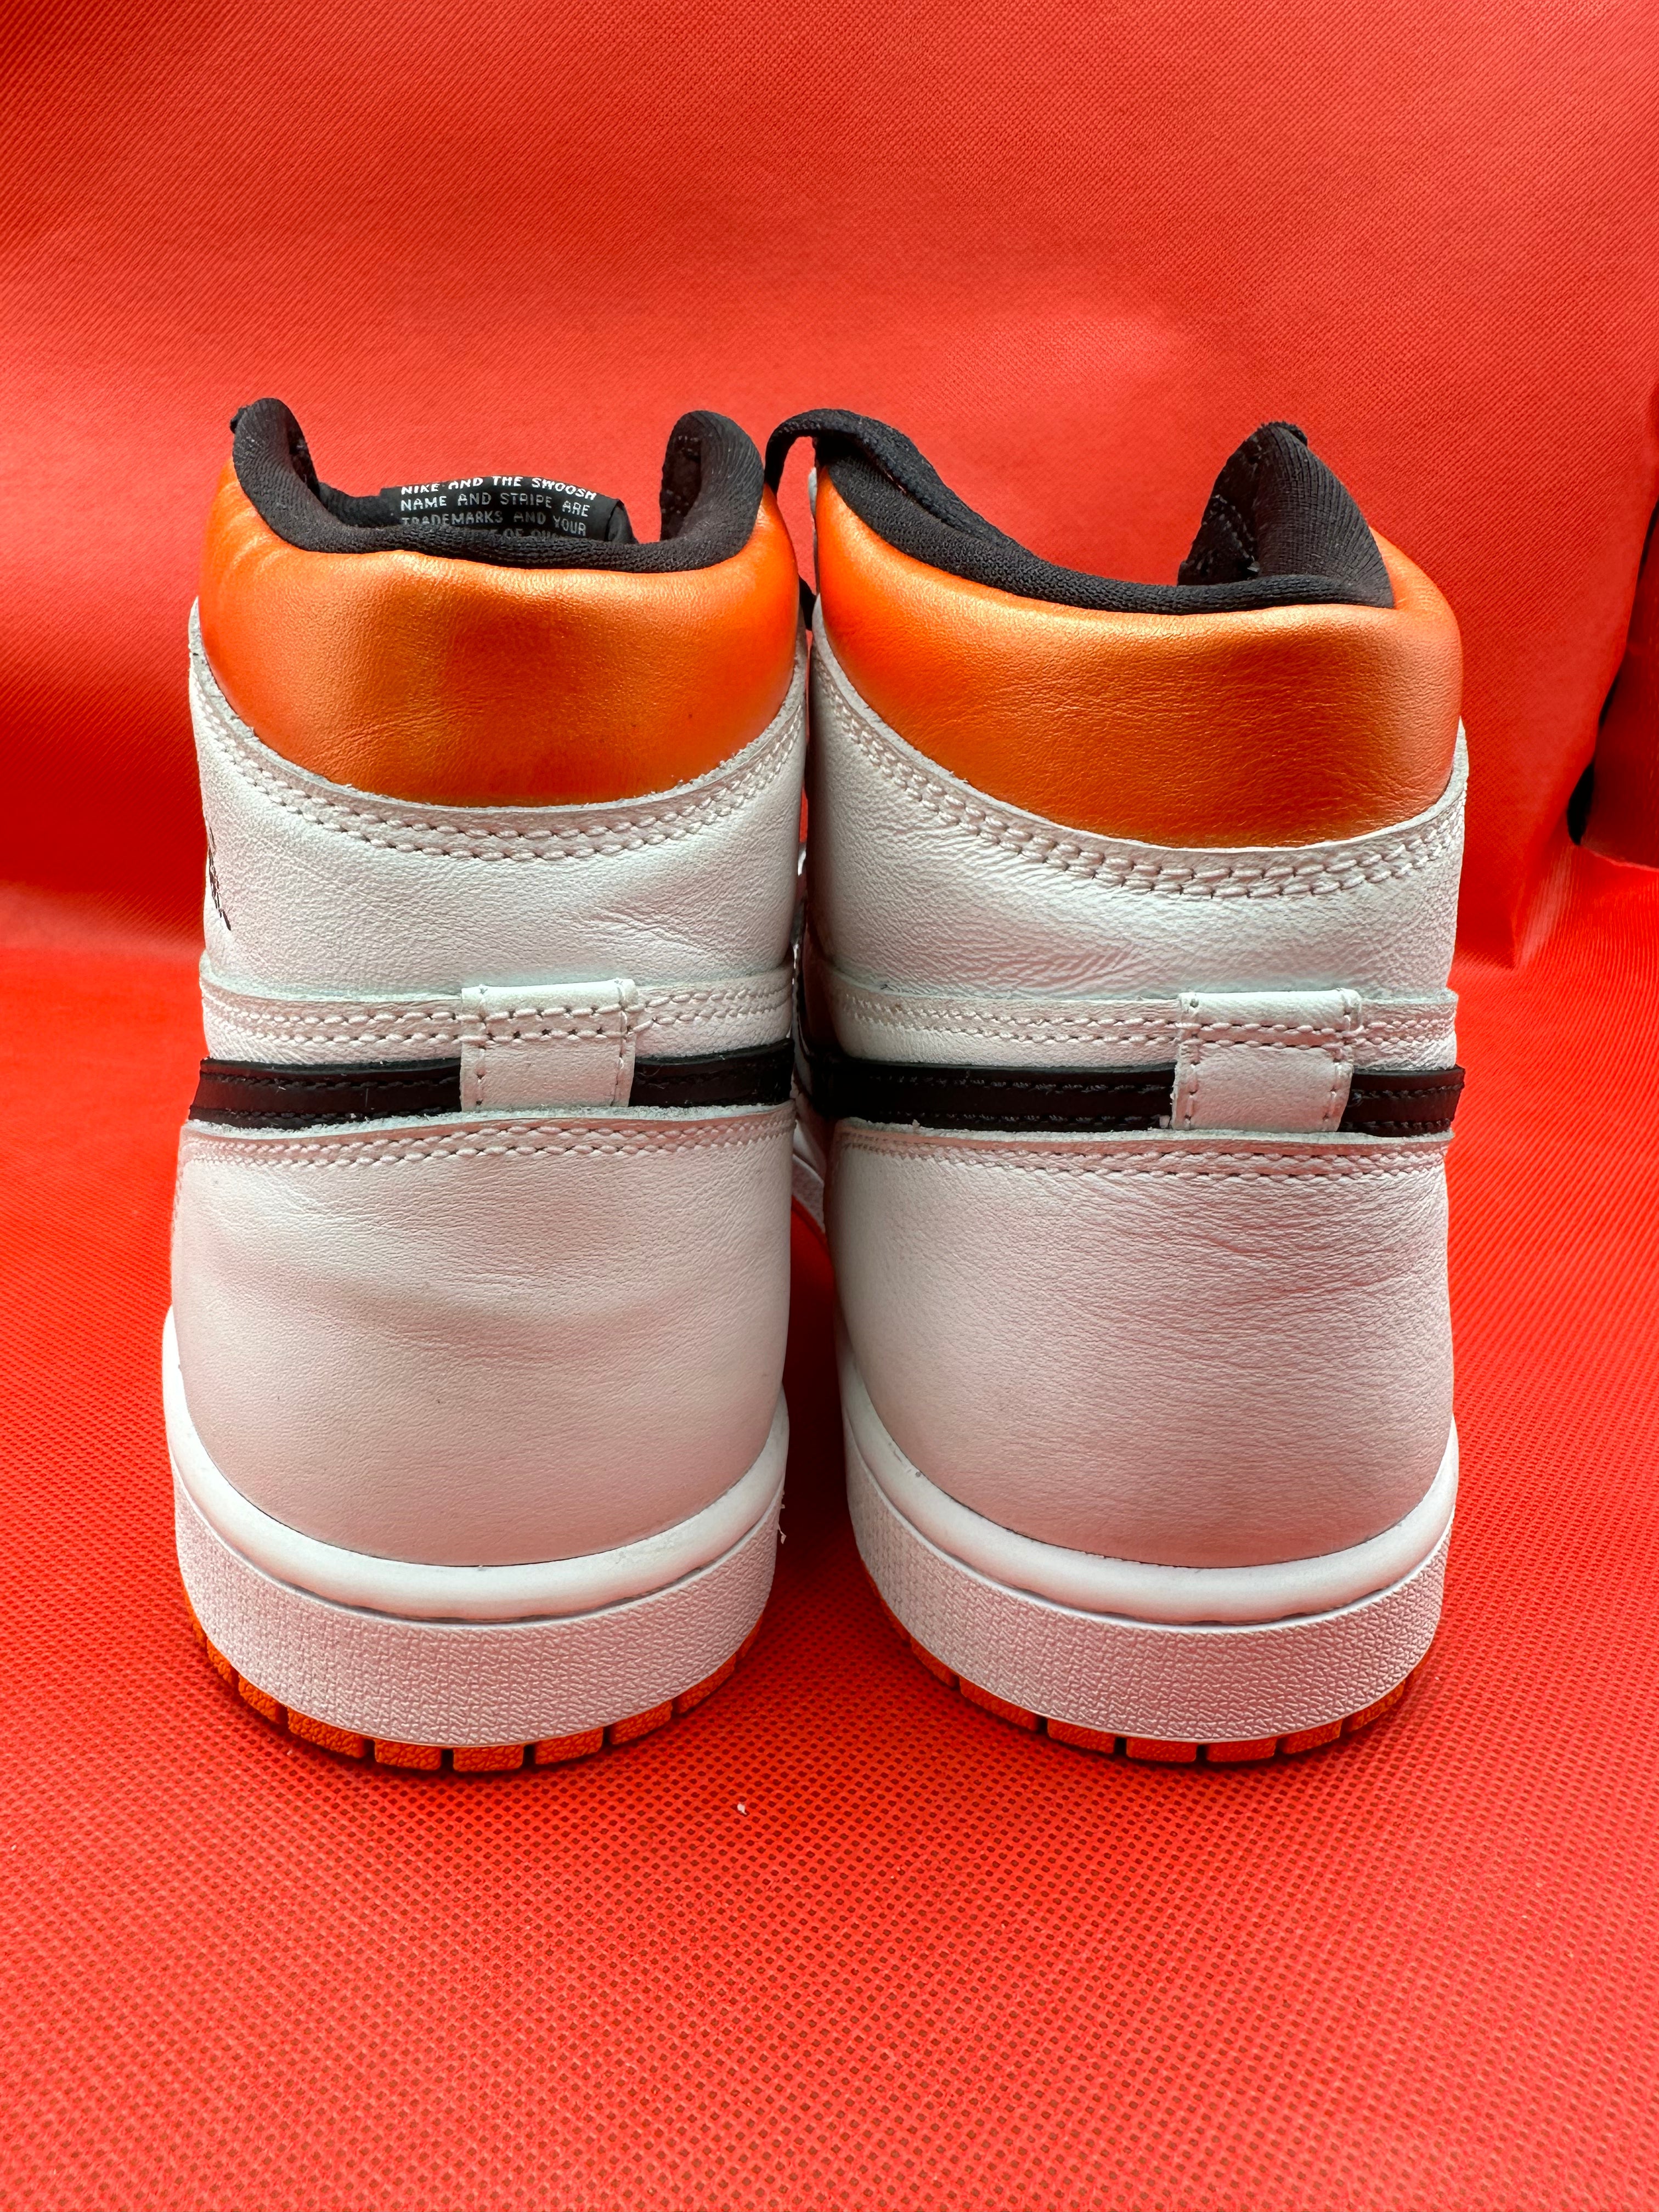 Electro Orange 1s Size 8.5